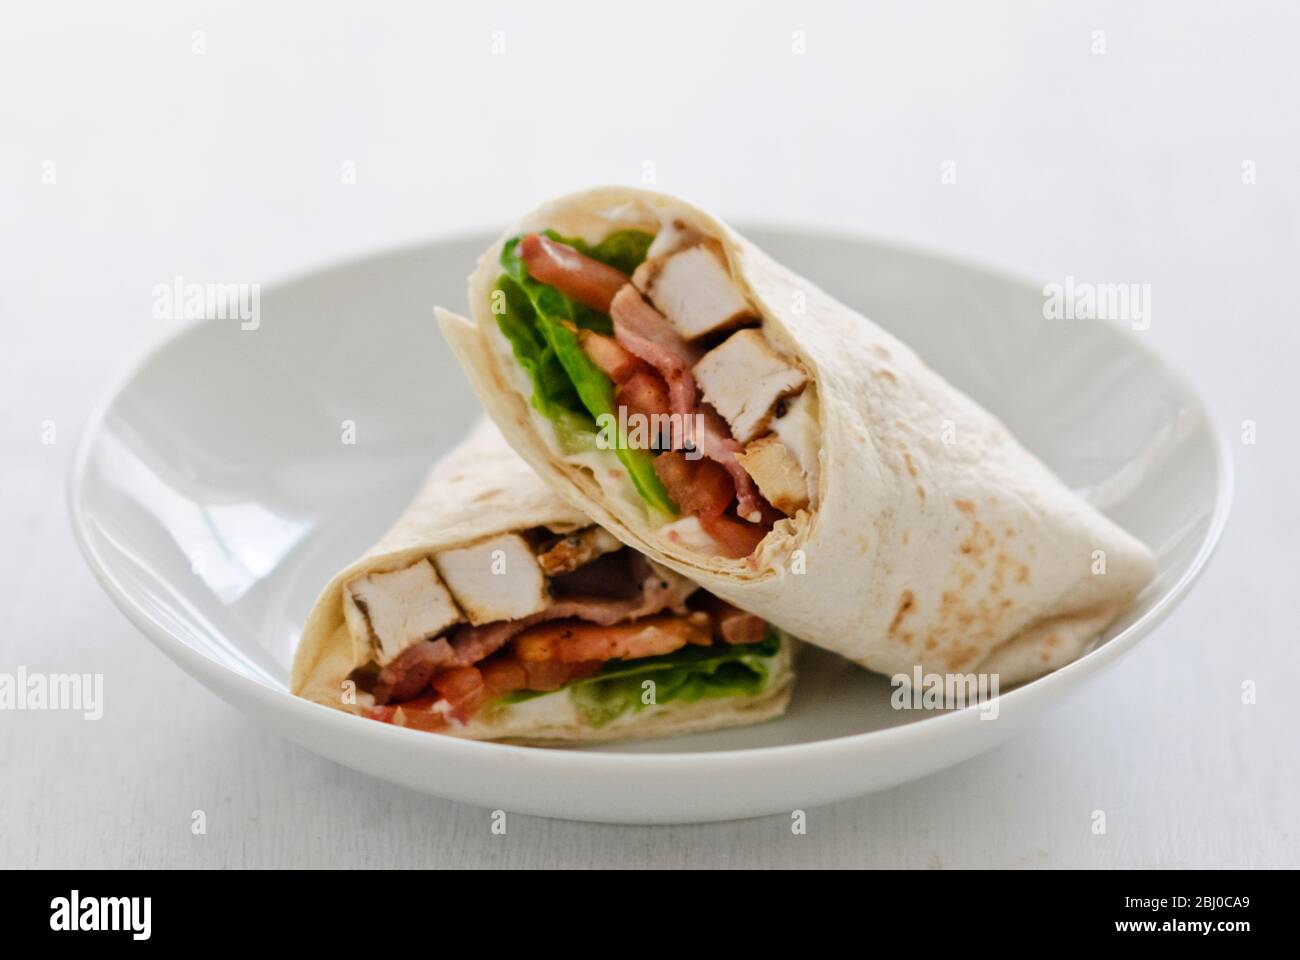 Sandwich Wrap mit Huhn, Speck, Tomaten und Salat - Stockfoto